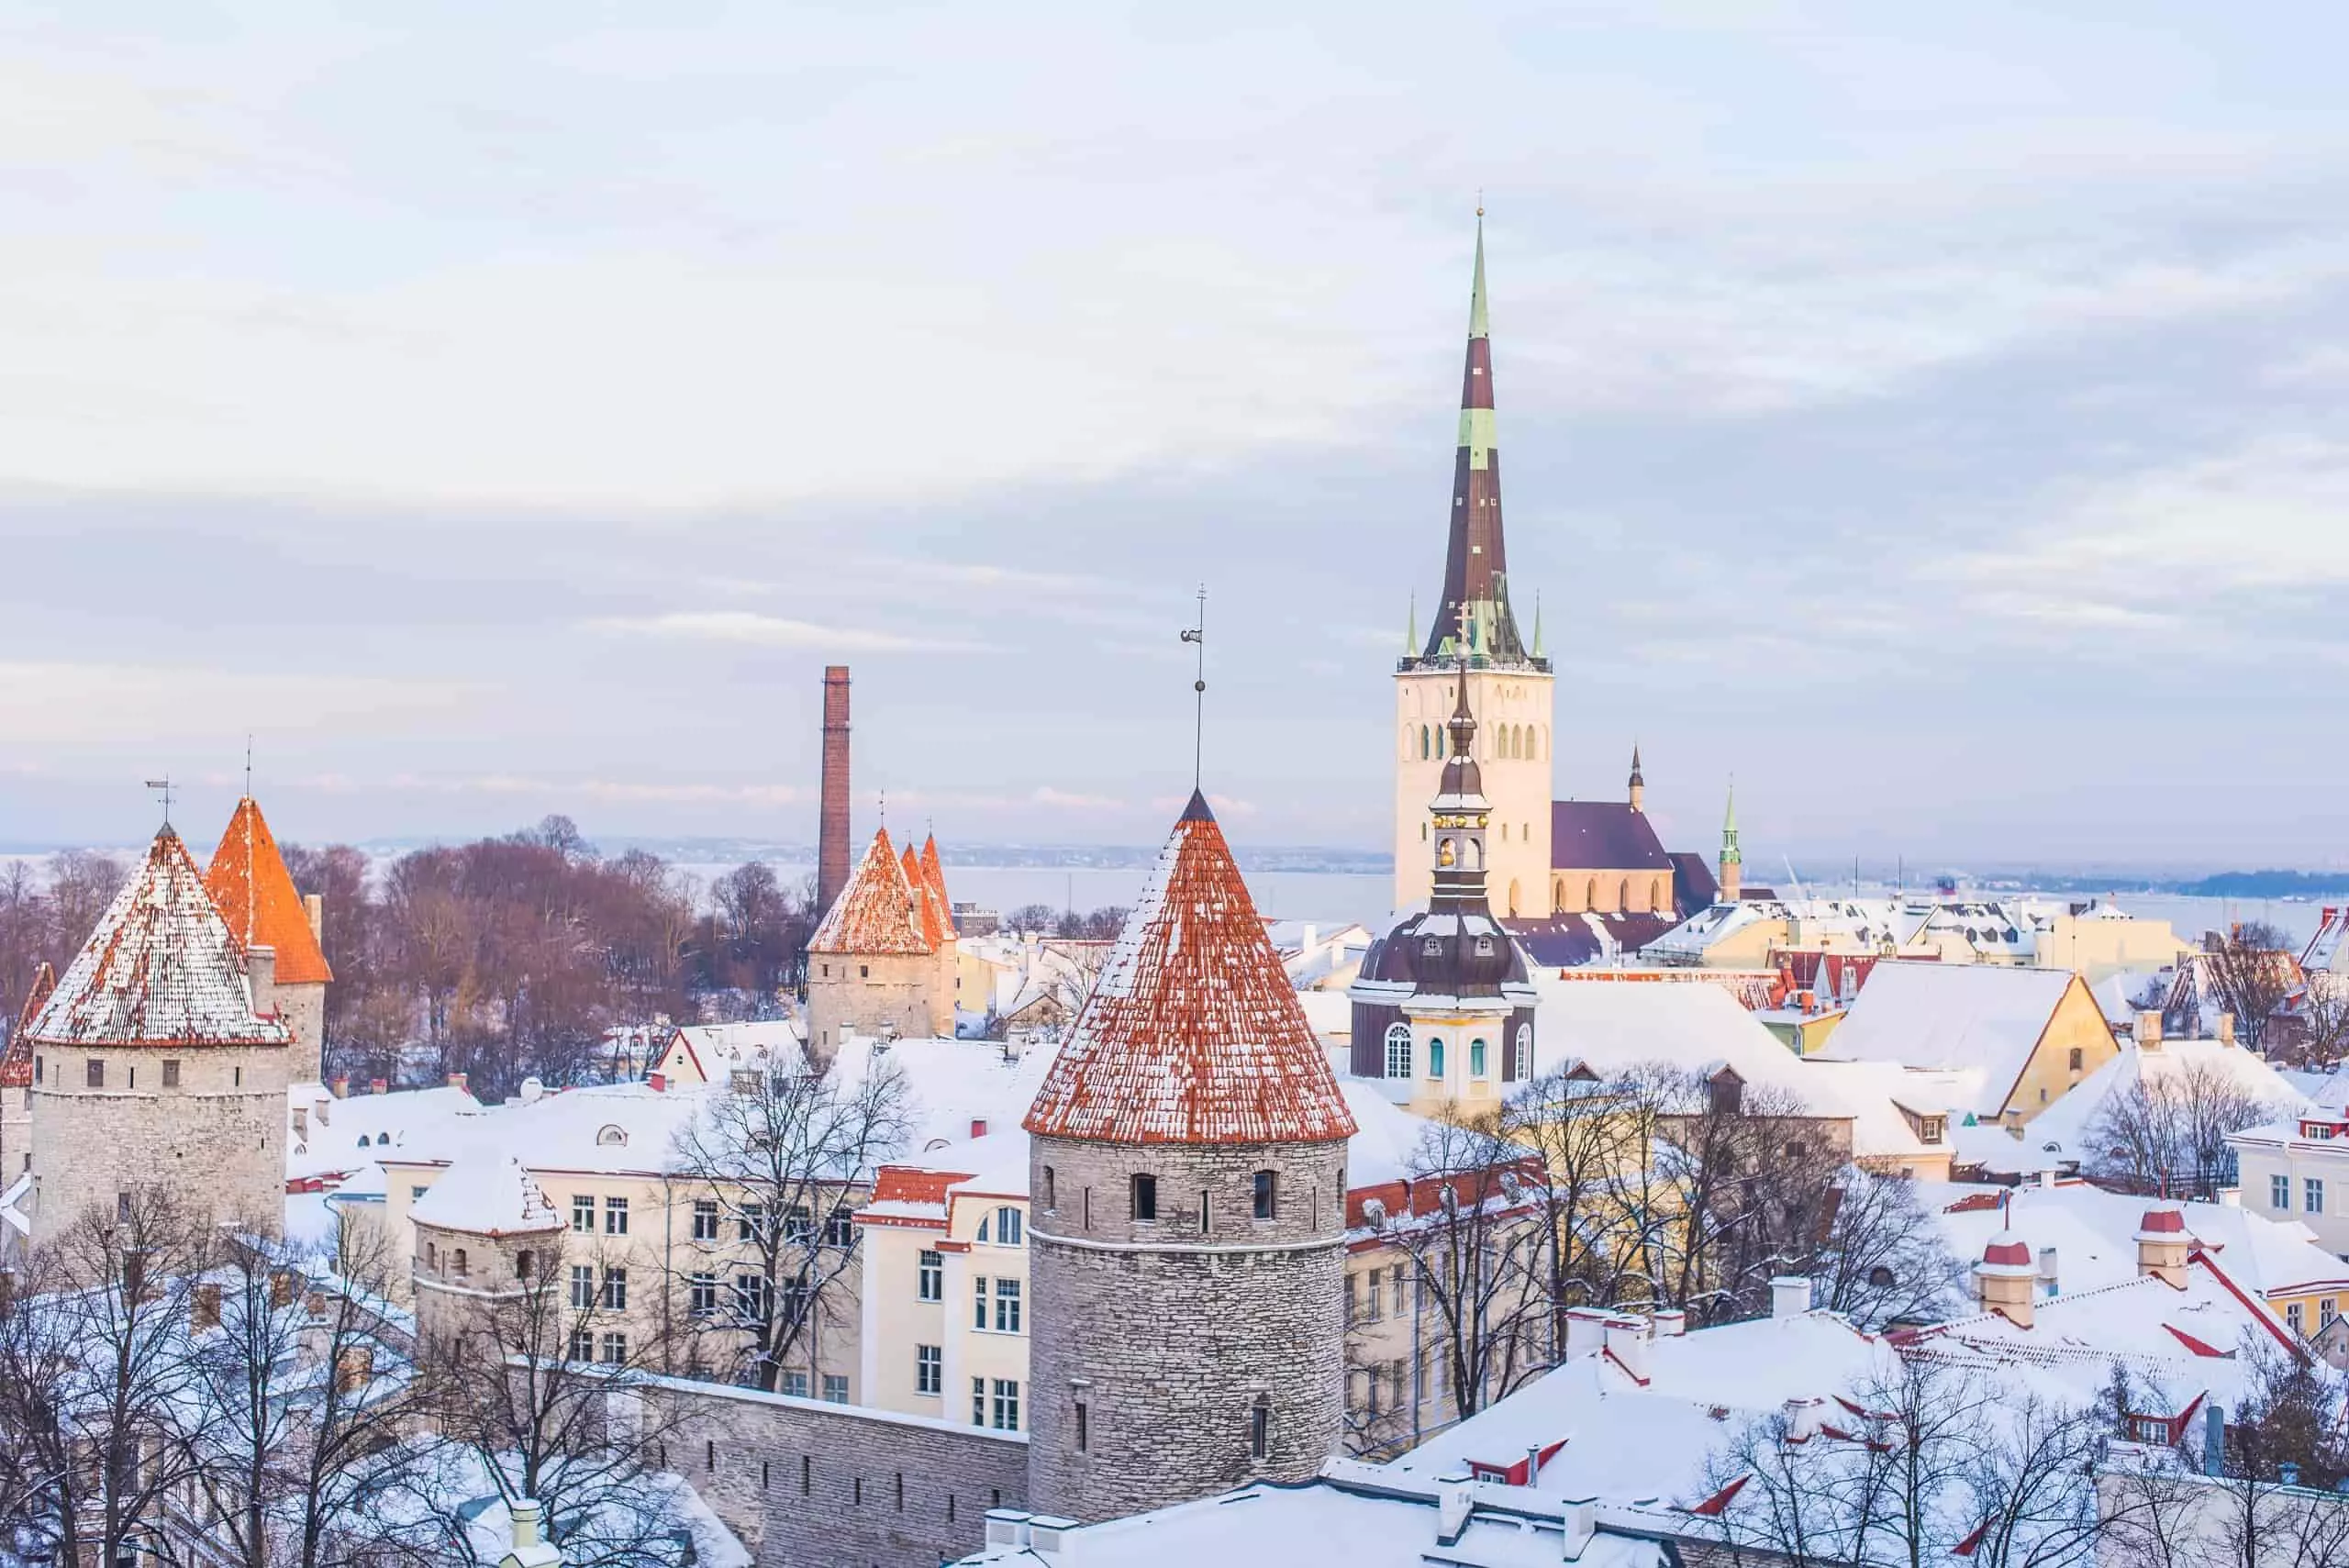 Old Town of Tallinn, Tallinn, Estonia.